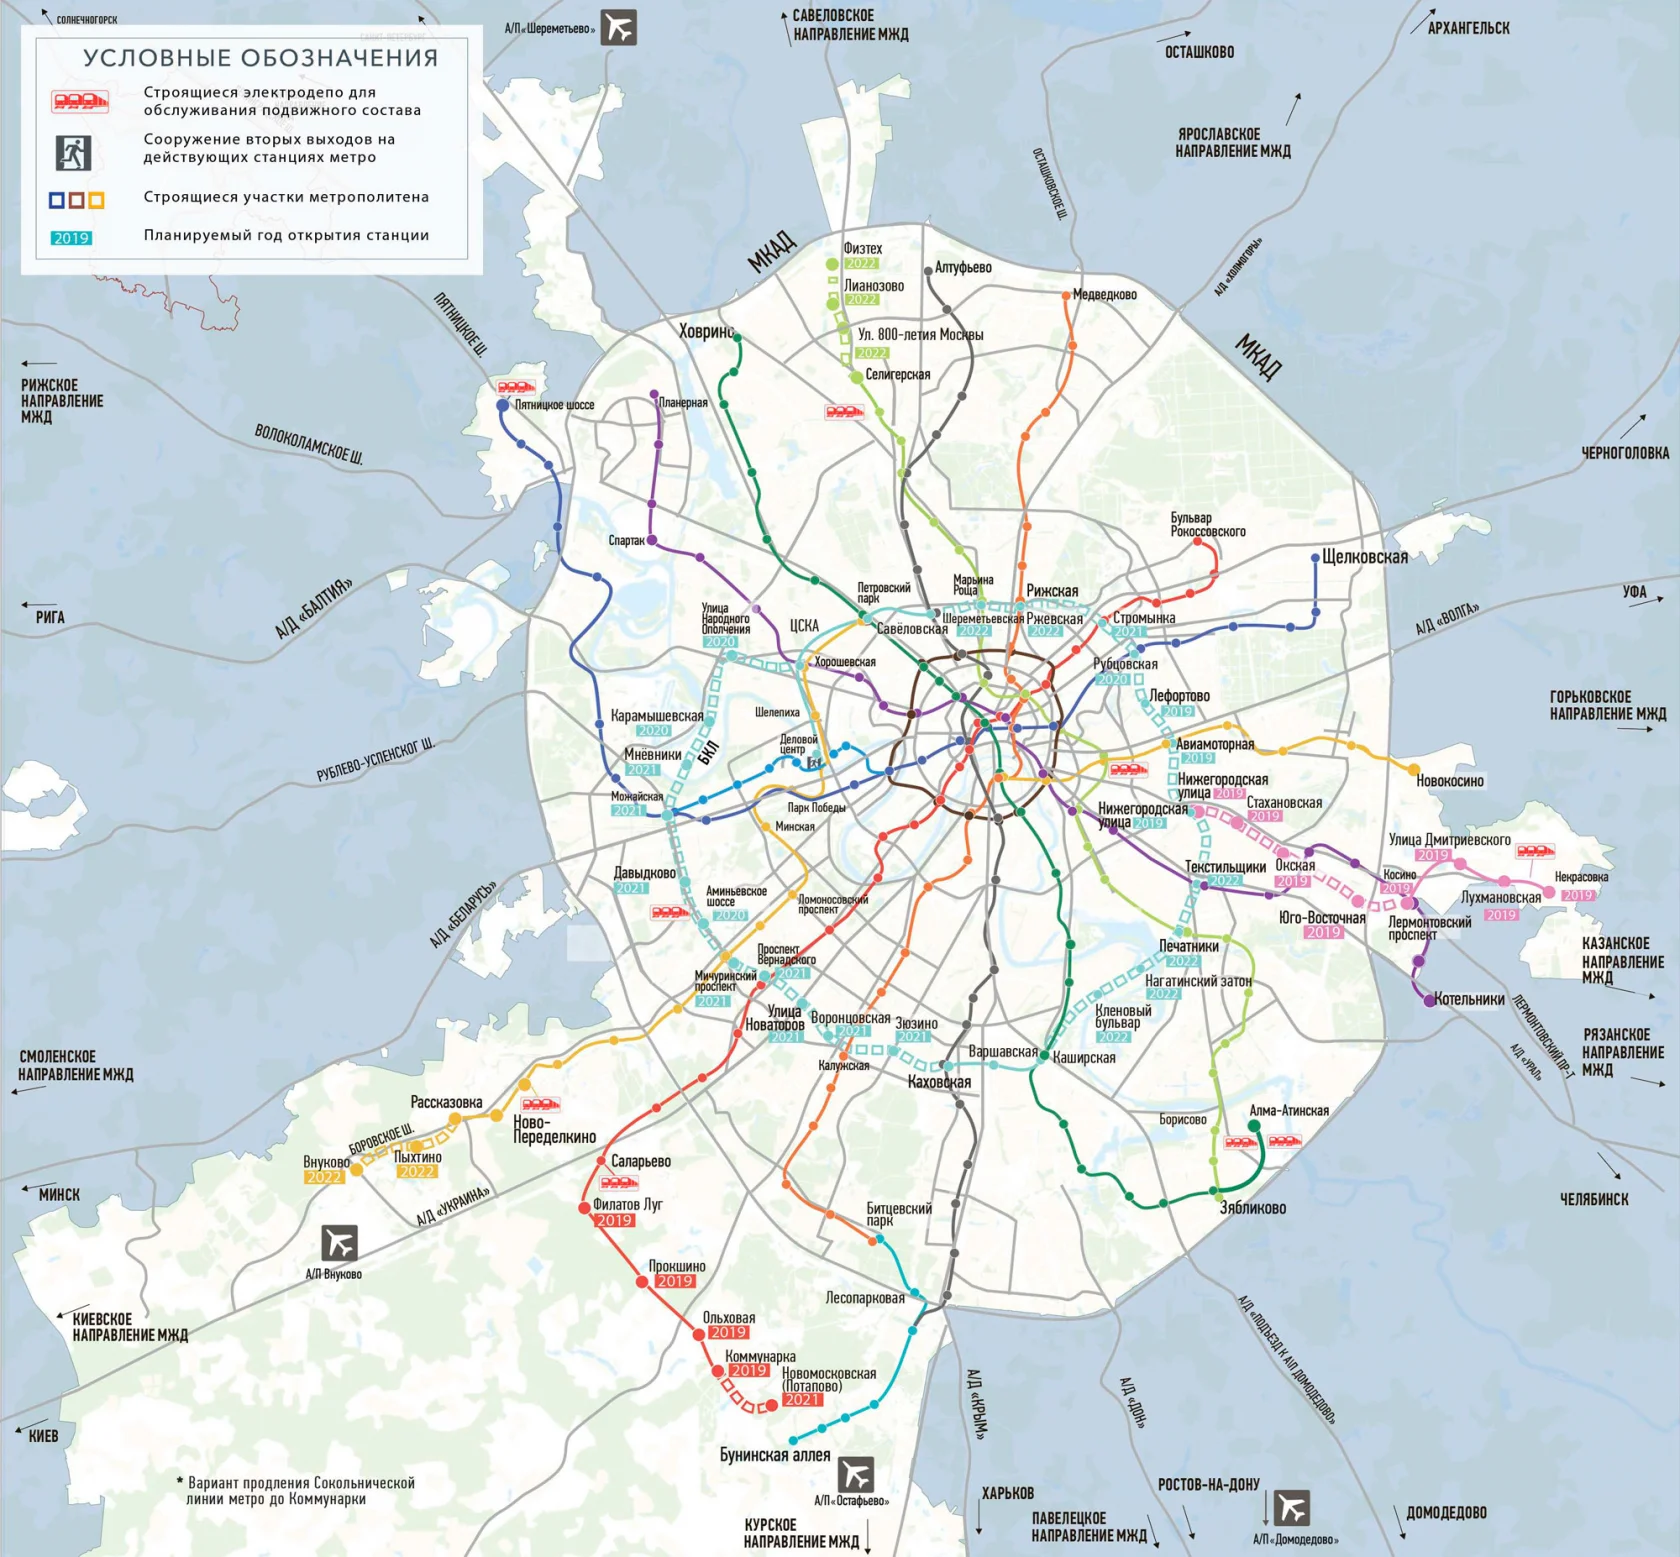 Планы развития метро москвы до 2035 года - 98 фото